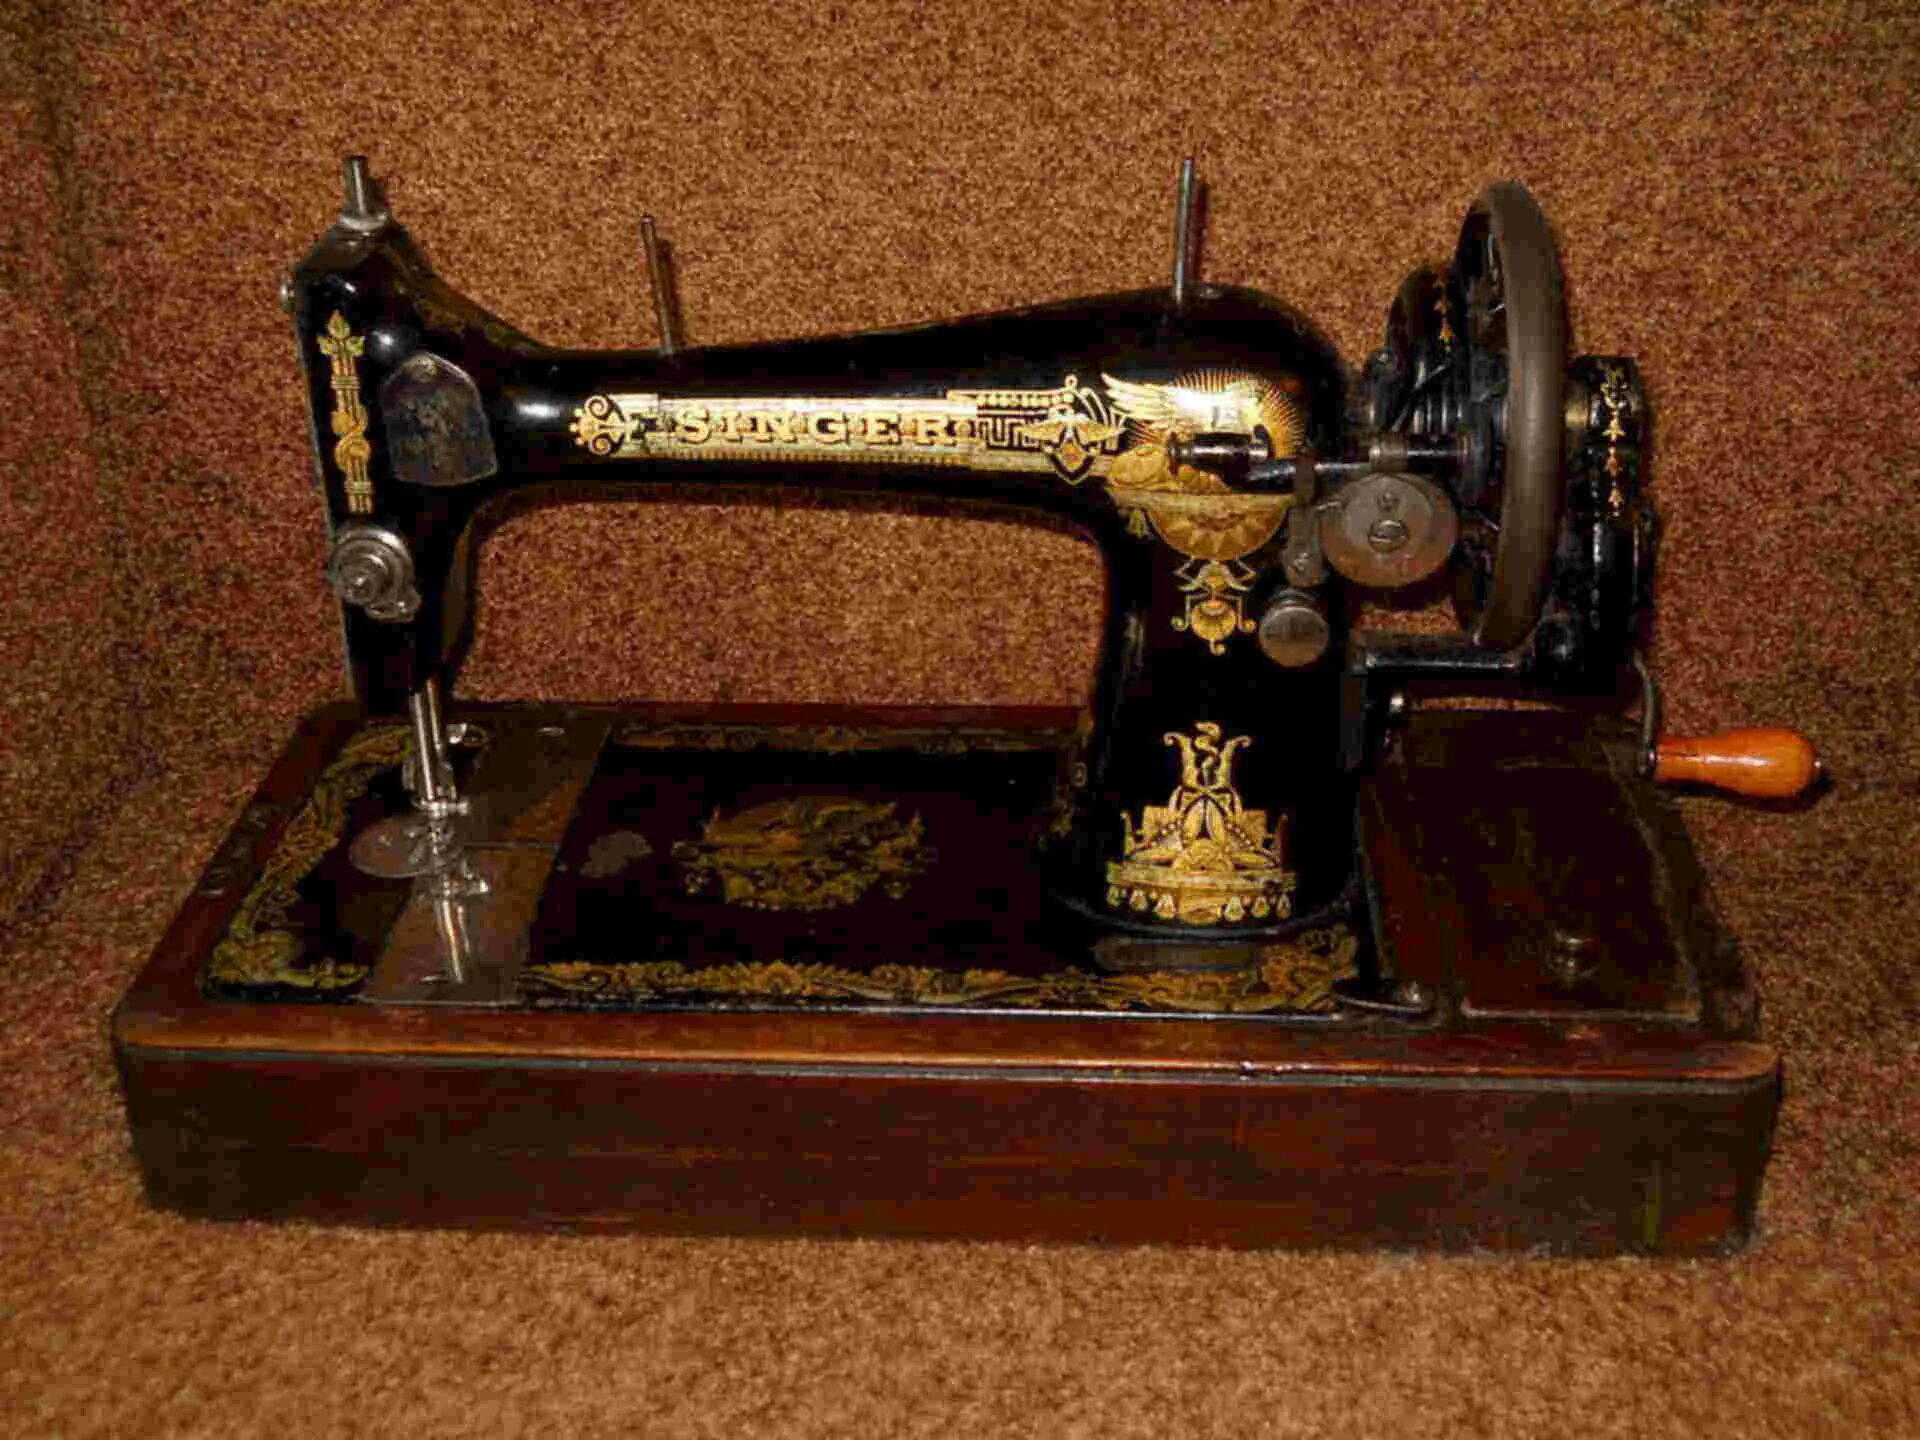 Старинная ручная швейная машинка